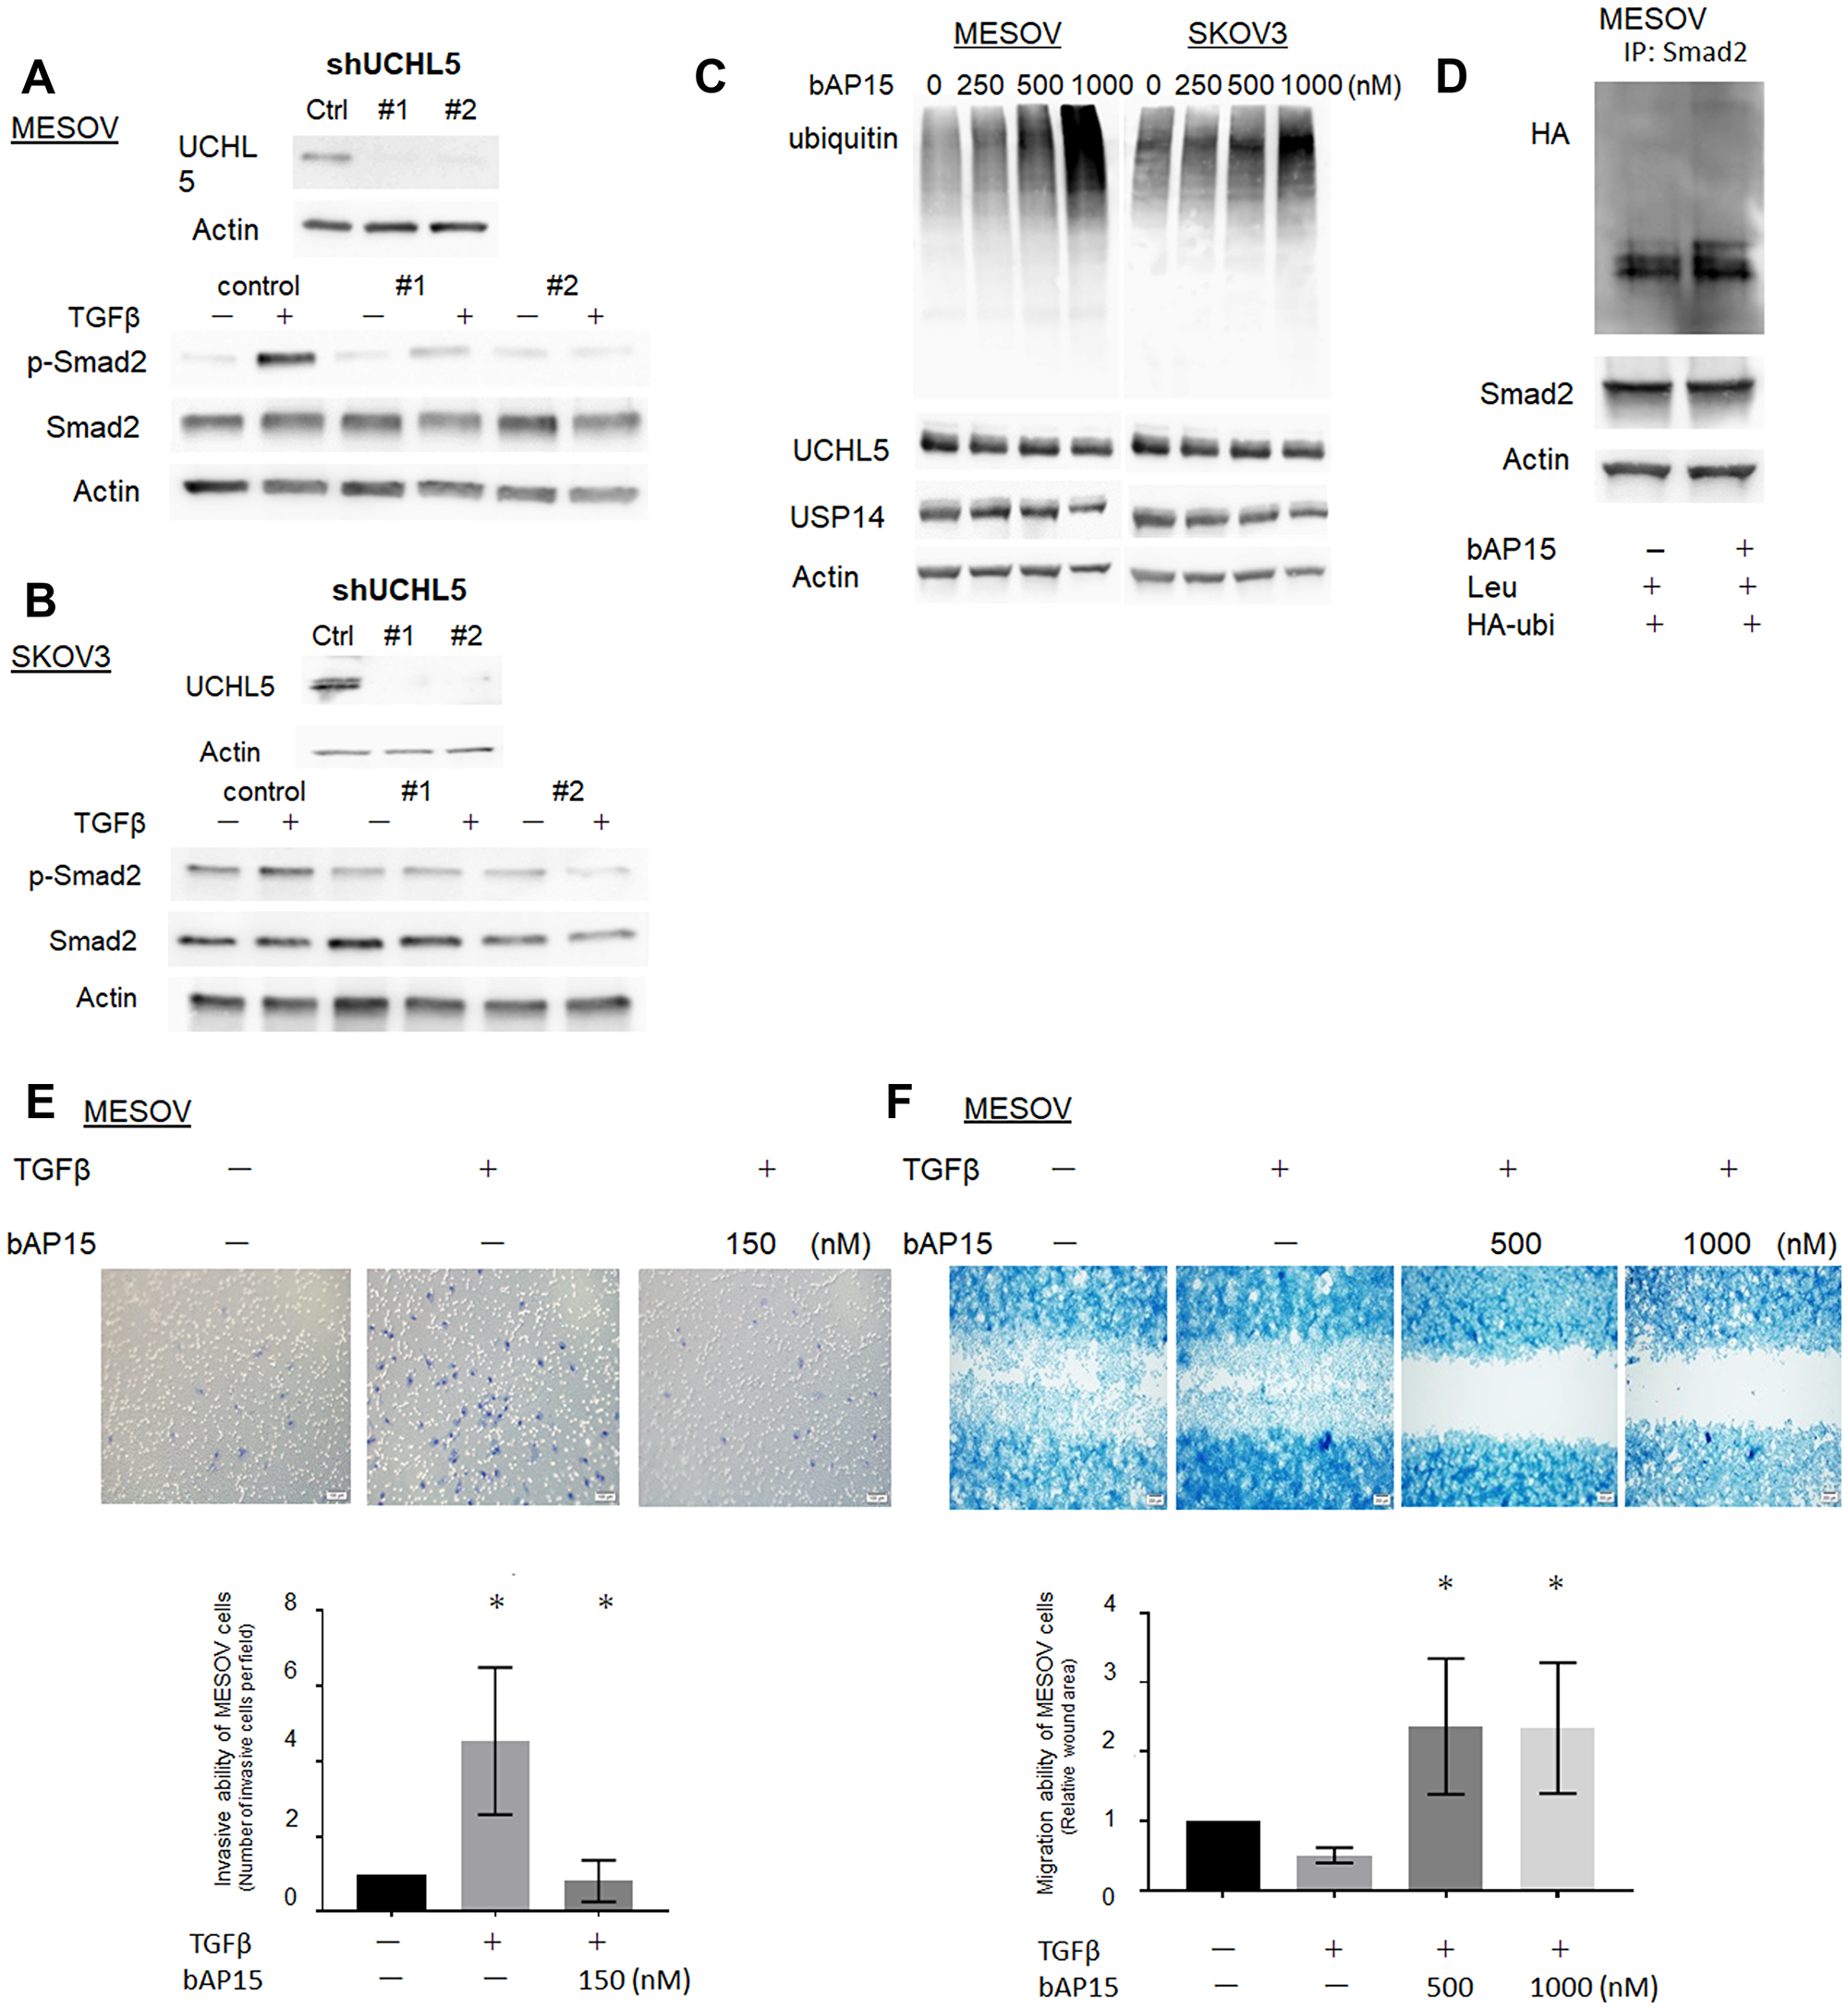 Knockdown of UCHL5 by shRNA suppresses phosphorylation of Smad2.